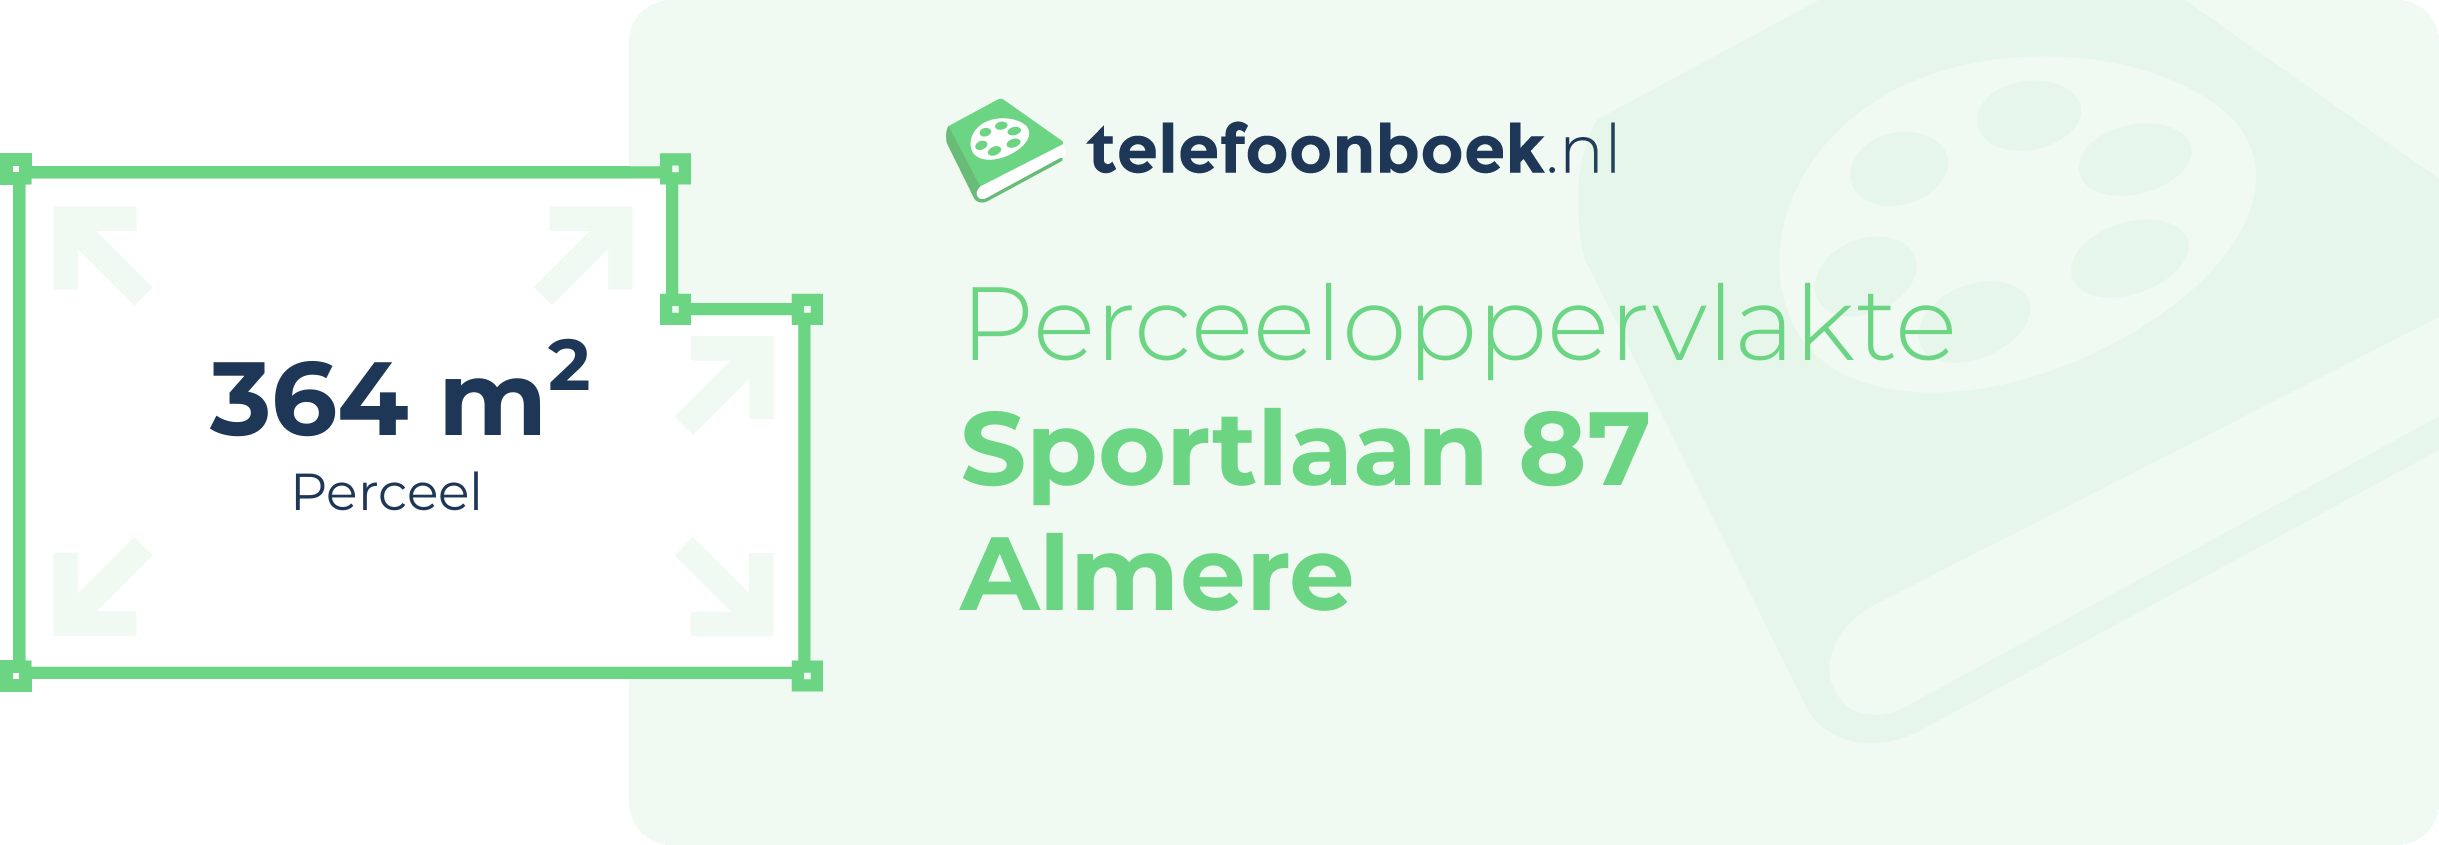 Perceeloppervlakte Sportlaan 87 Almere